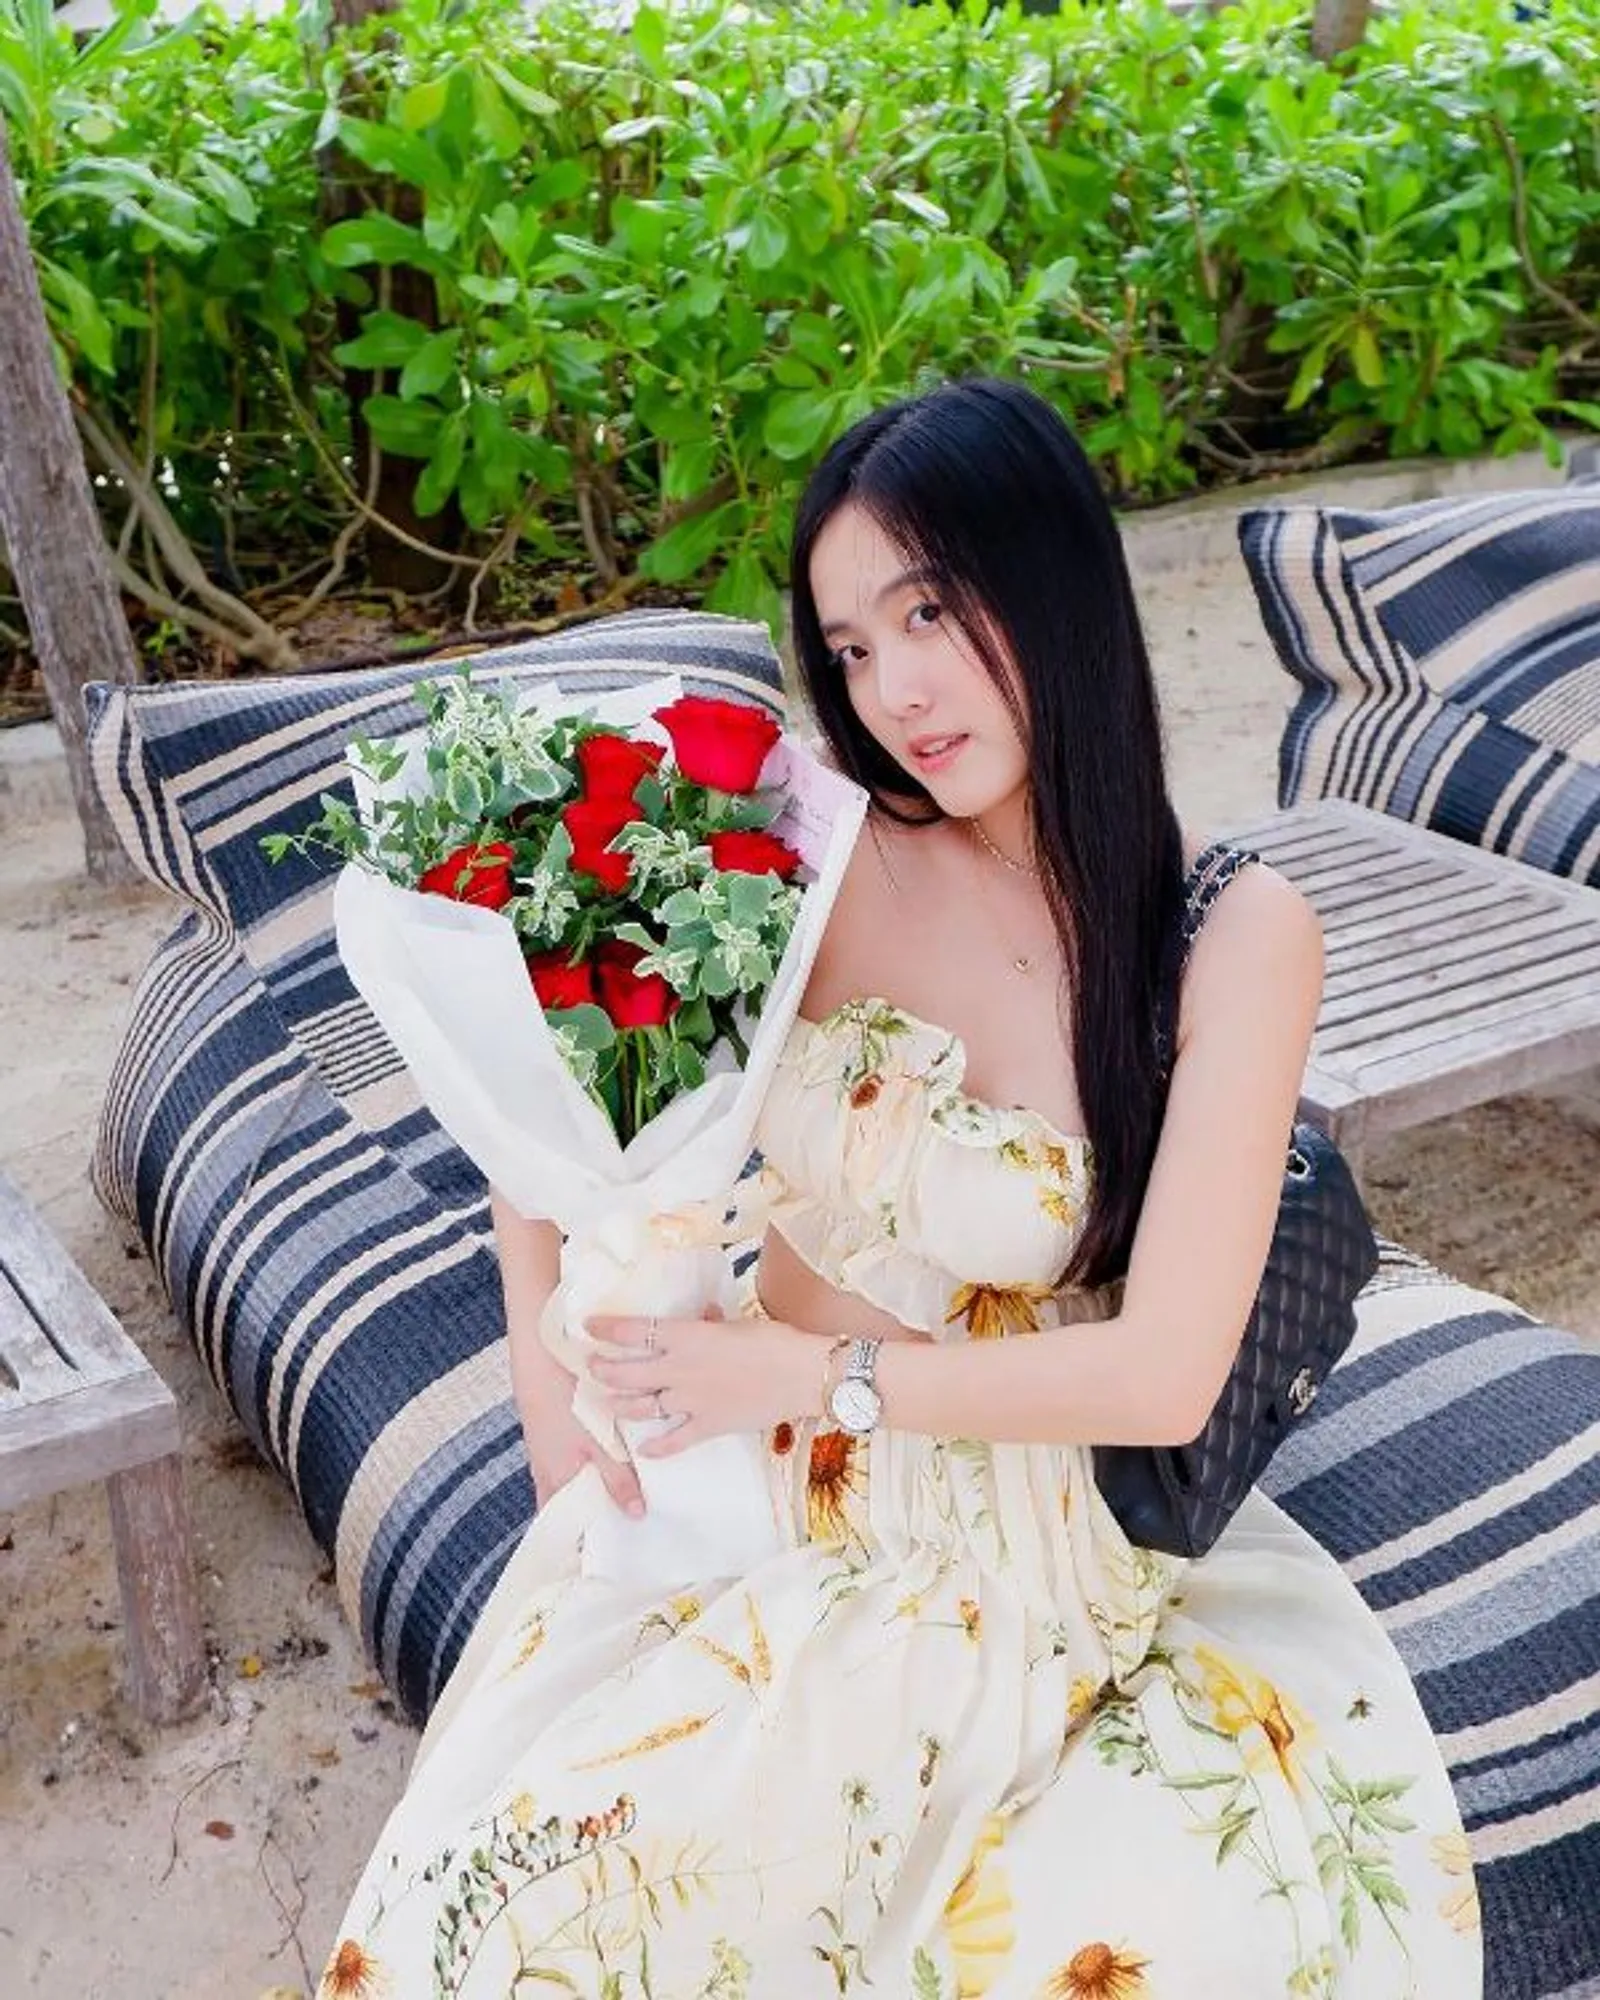 Kronologi Aktor Thailand Toy Thanapat yang Diduga Membunuh Kekasih 